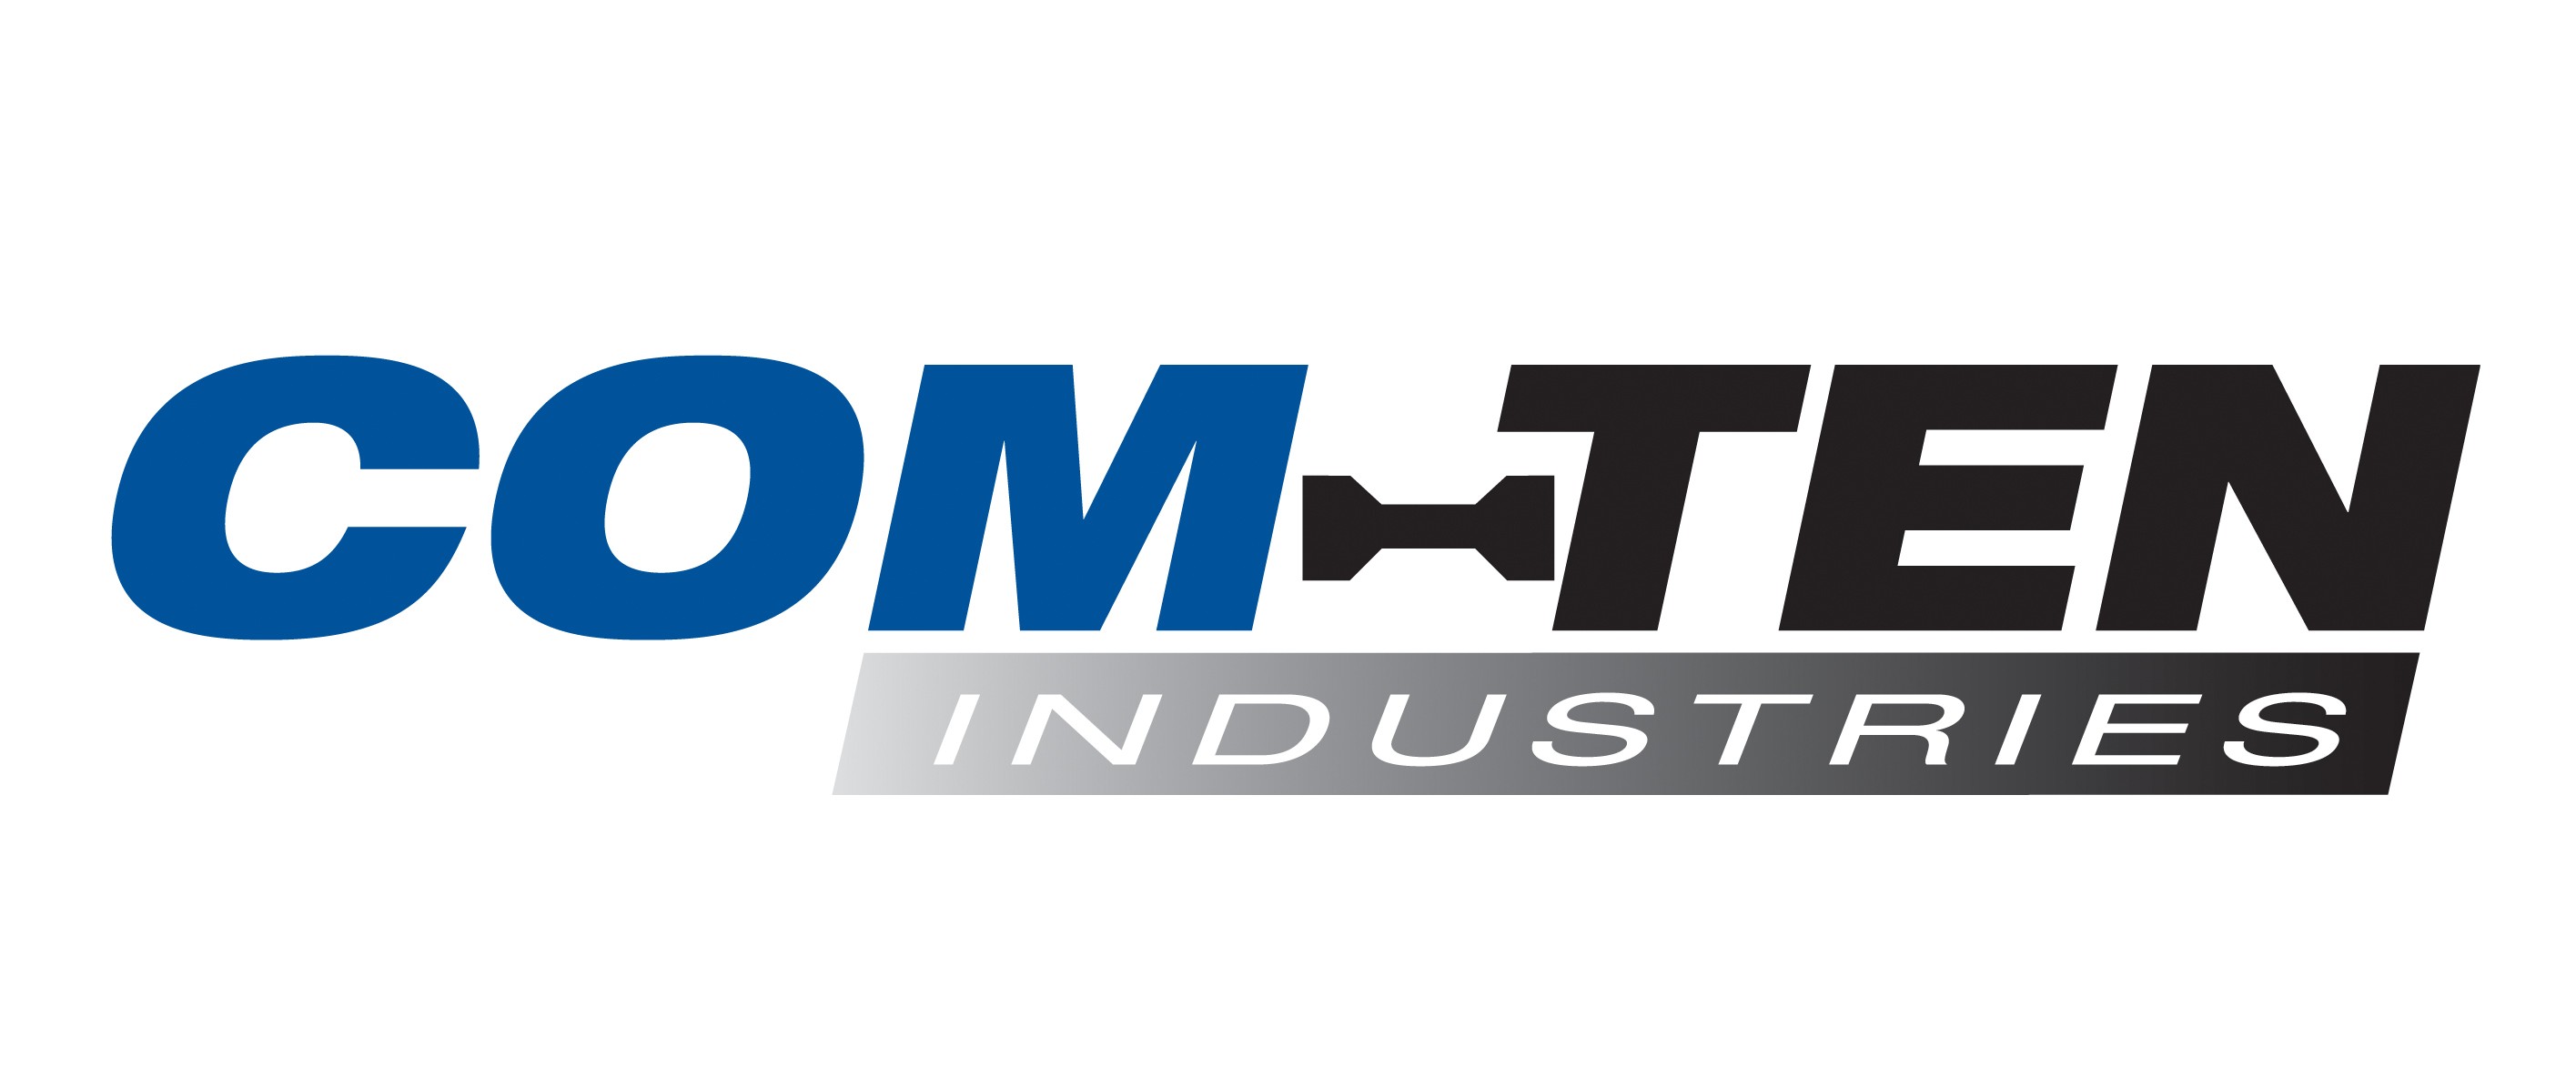 Com-Ten Industries